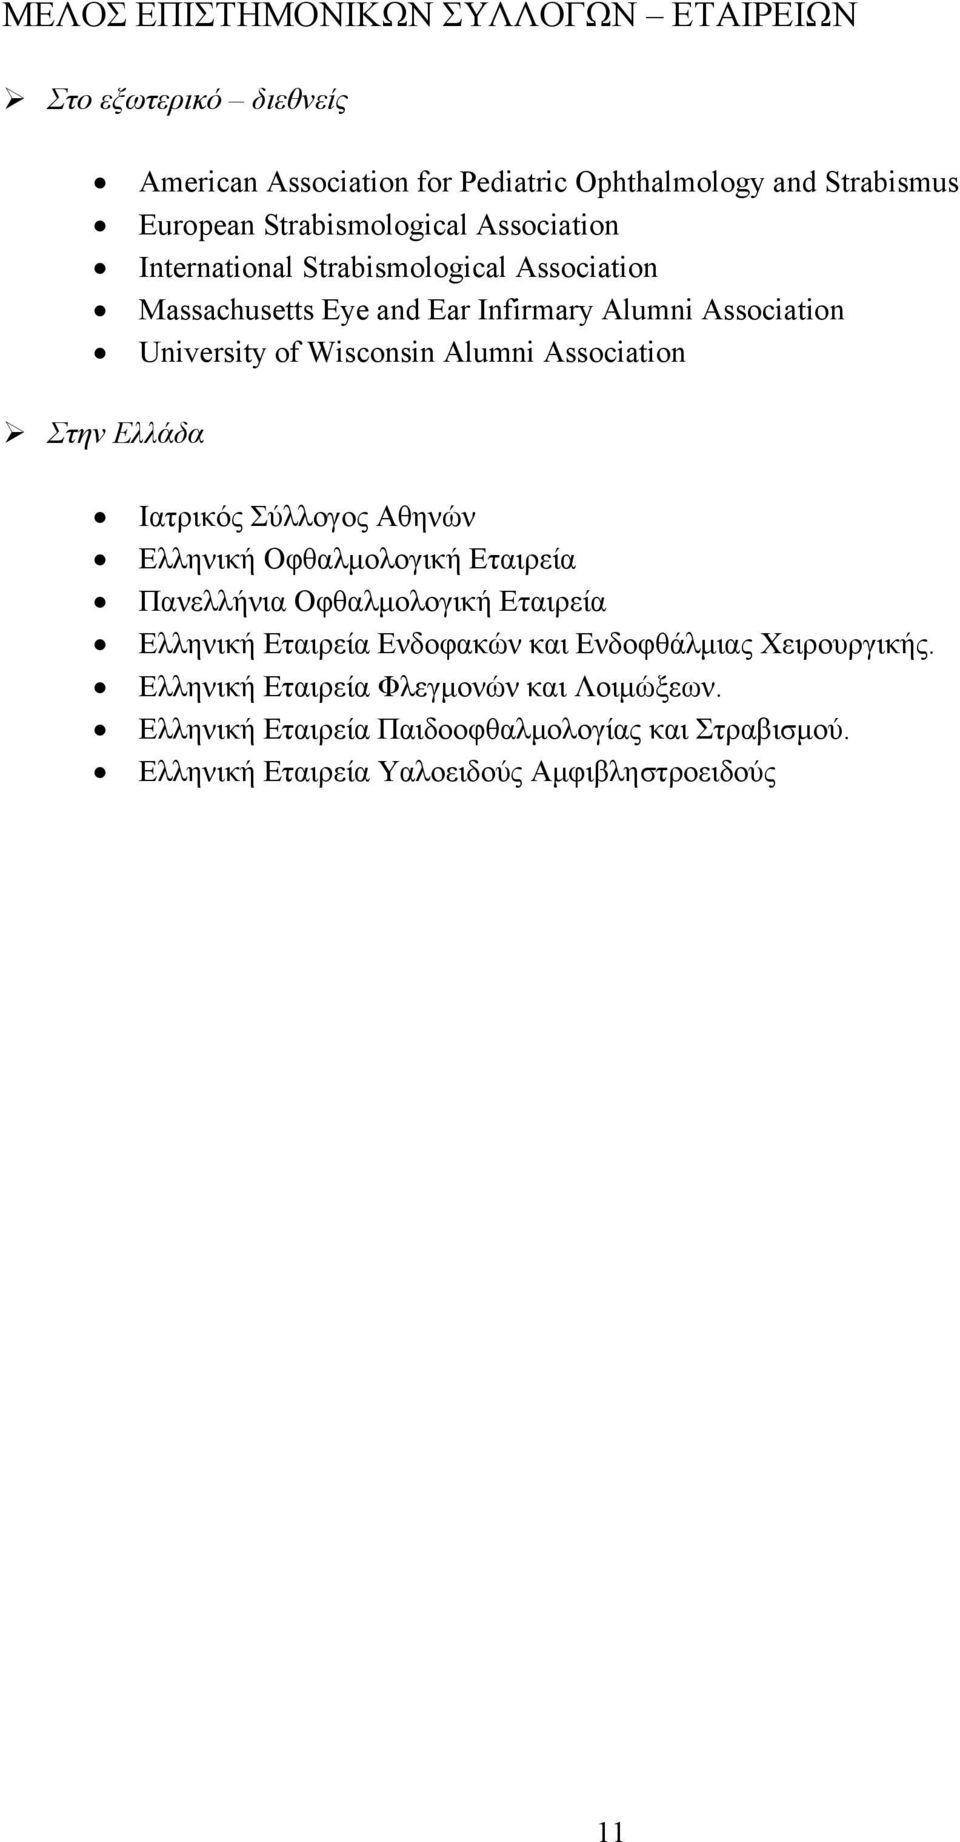 Στην Ελλάδα Ιατρικός Σύλλογος Αθηνών Ελληνική Οφθαλμολογική Εταιρεία Πανελλήνια Οφθαλμολογική Εταιρεία Ελληνική Εταιρεία Ενδοφακών και Ενδοφθάλμιας